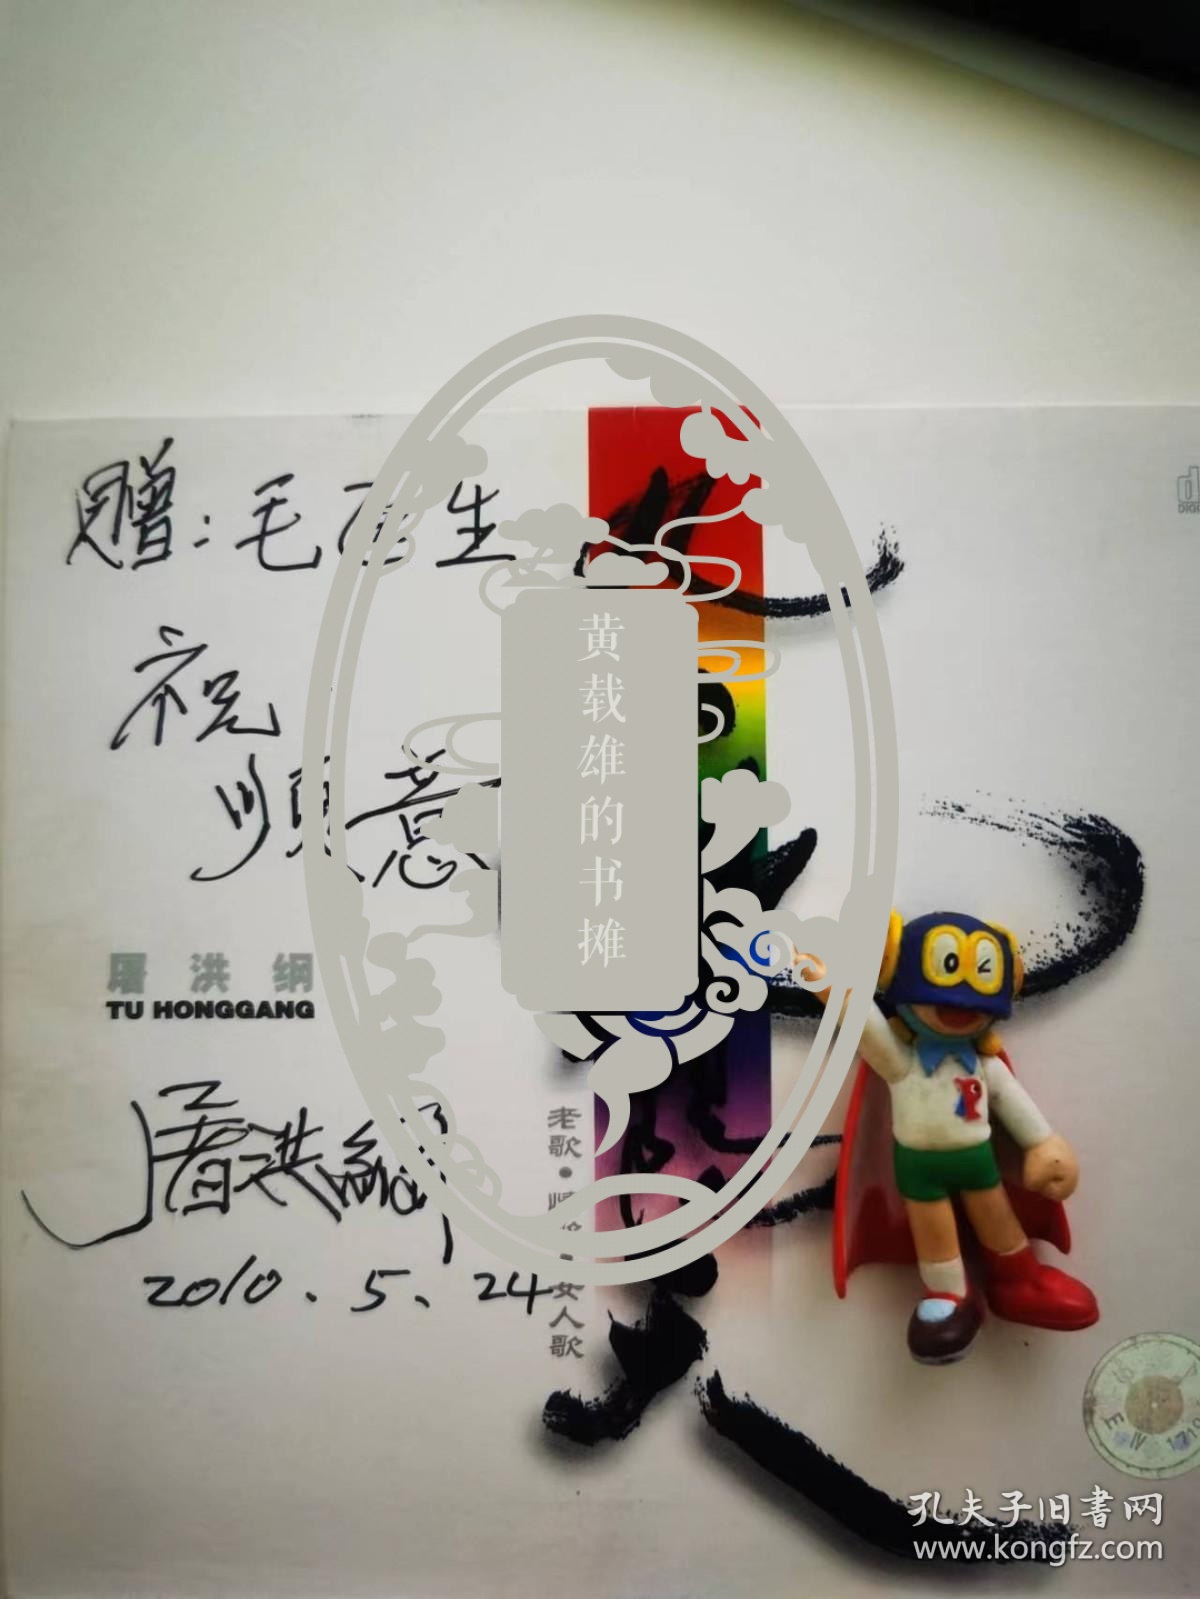 屠洪刚亲笔签名唱片封面，题词“祝顺意”